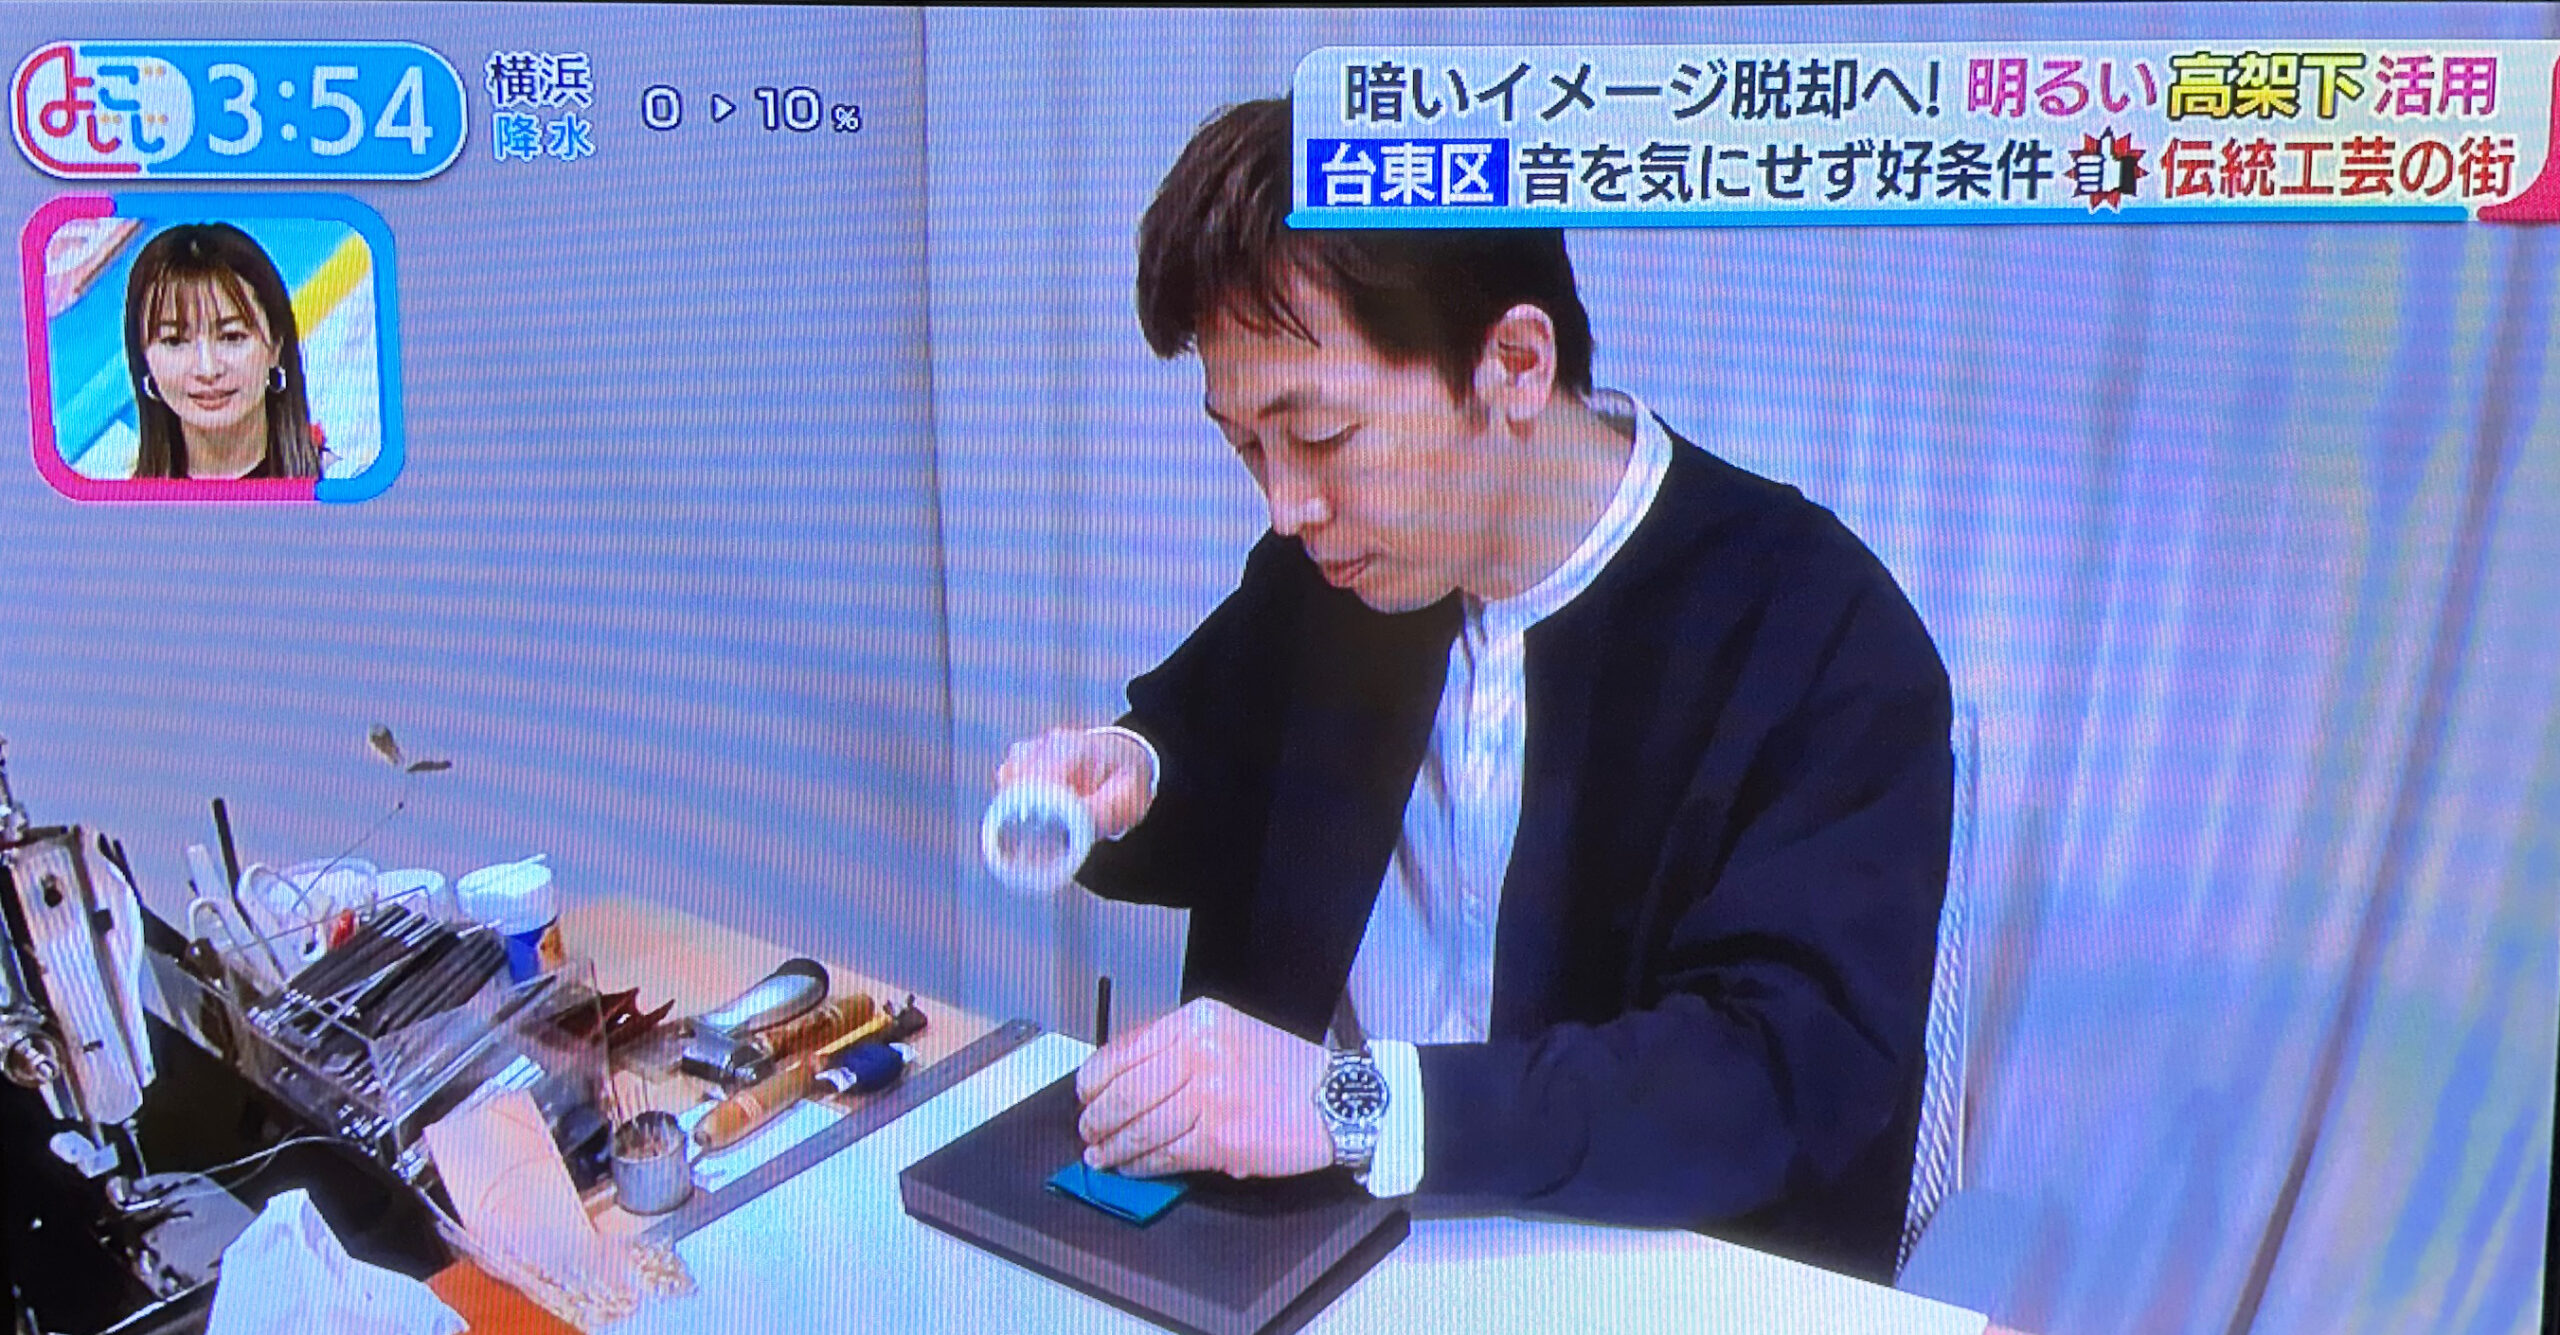 テレビ東京 「よじごじDays」でSTUDIUM アトリエショップが紹介されました。